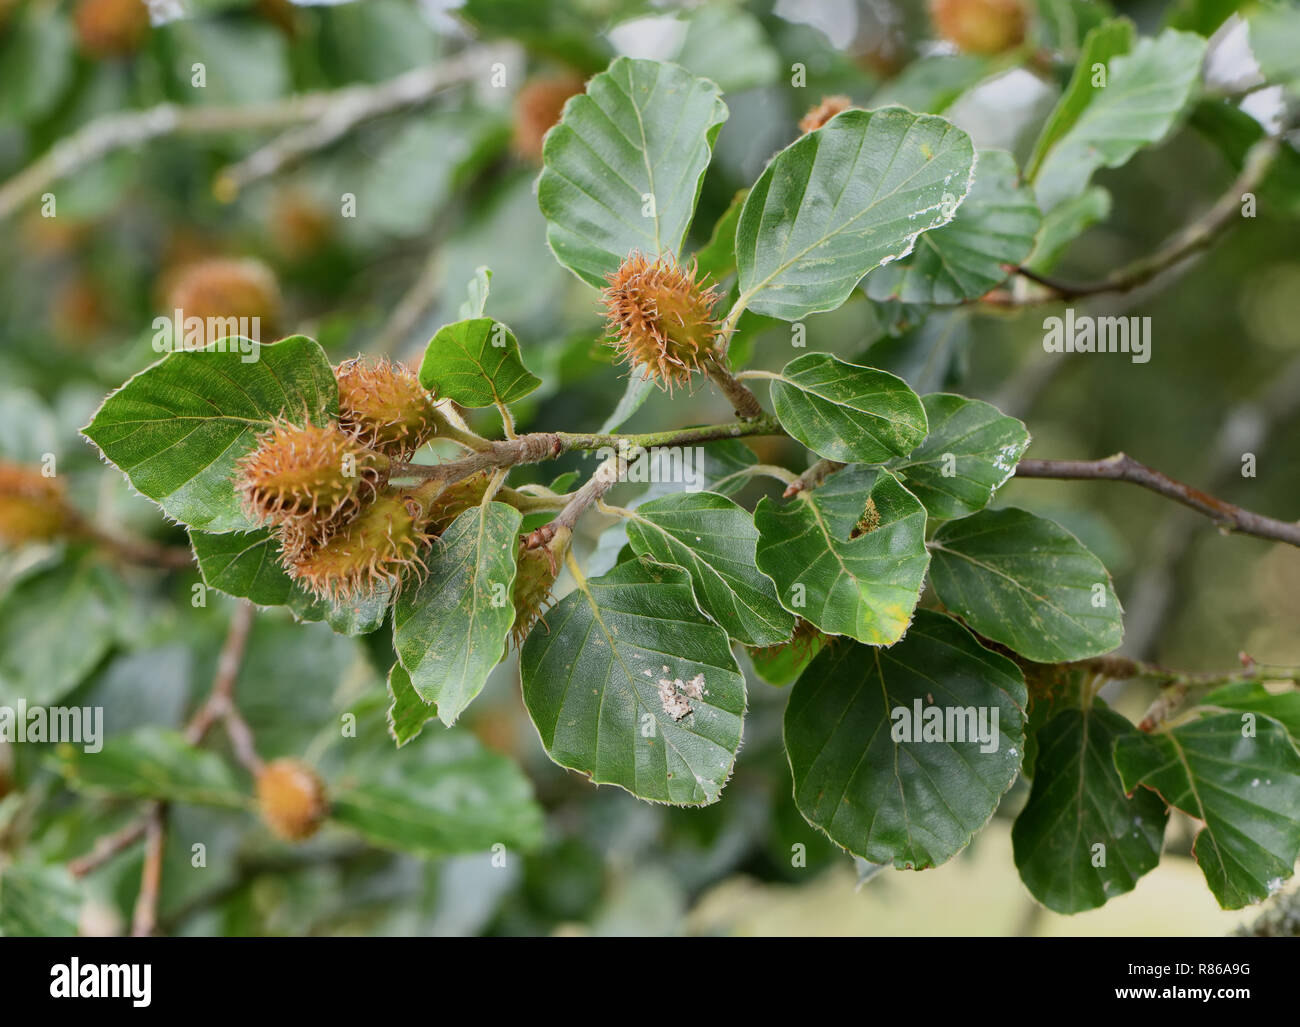 Green, unripe seeds of a beech tree (Fagus sylvatica), beech mast. Little Bayham, Tunbridge Wells, Kent, UK. Stock Photo